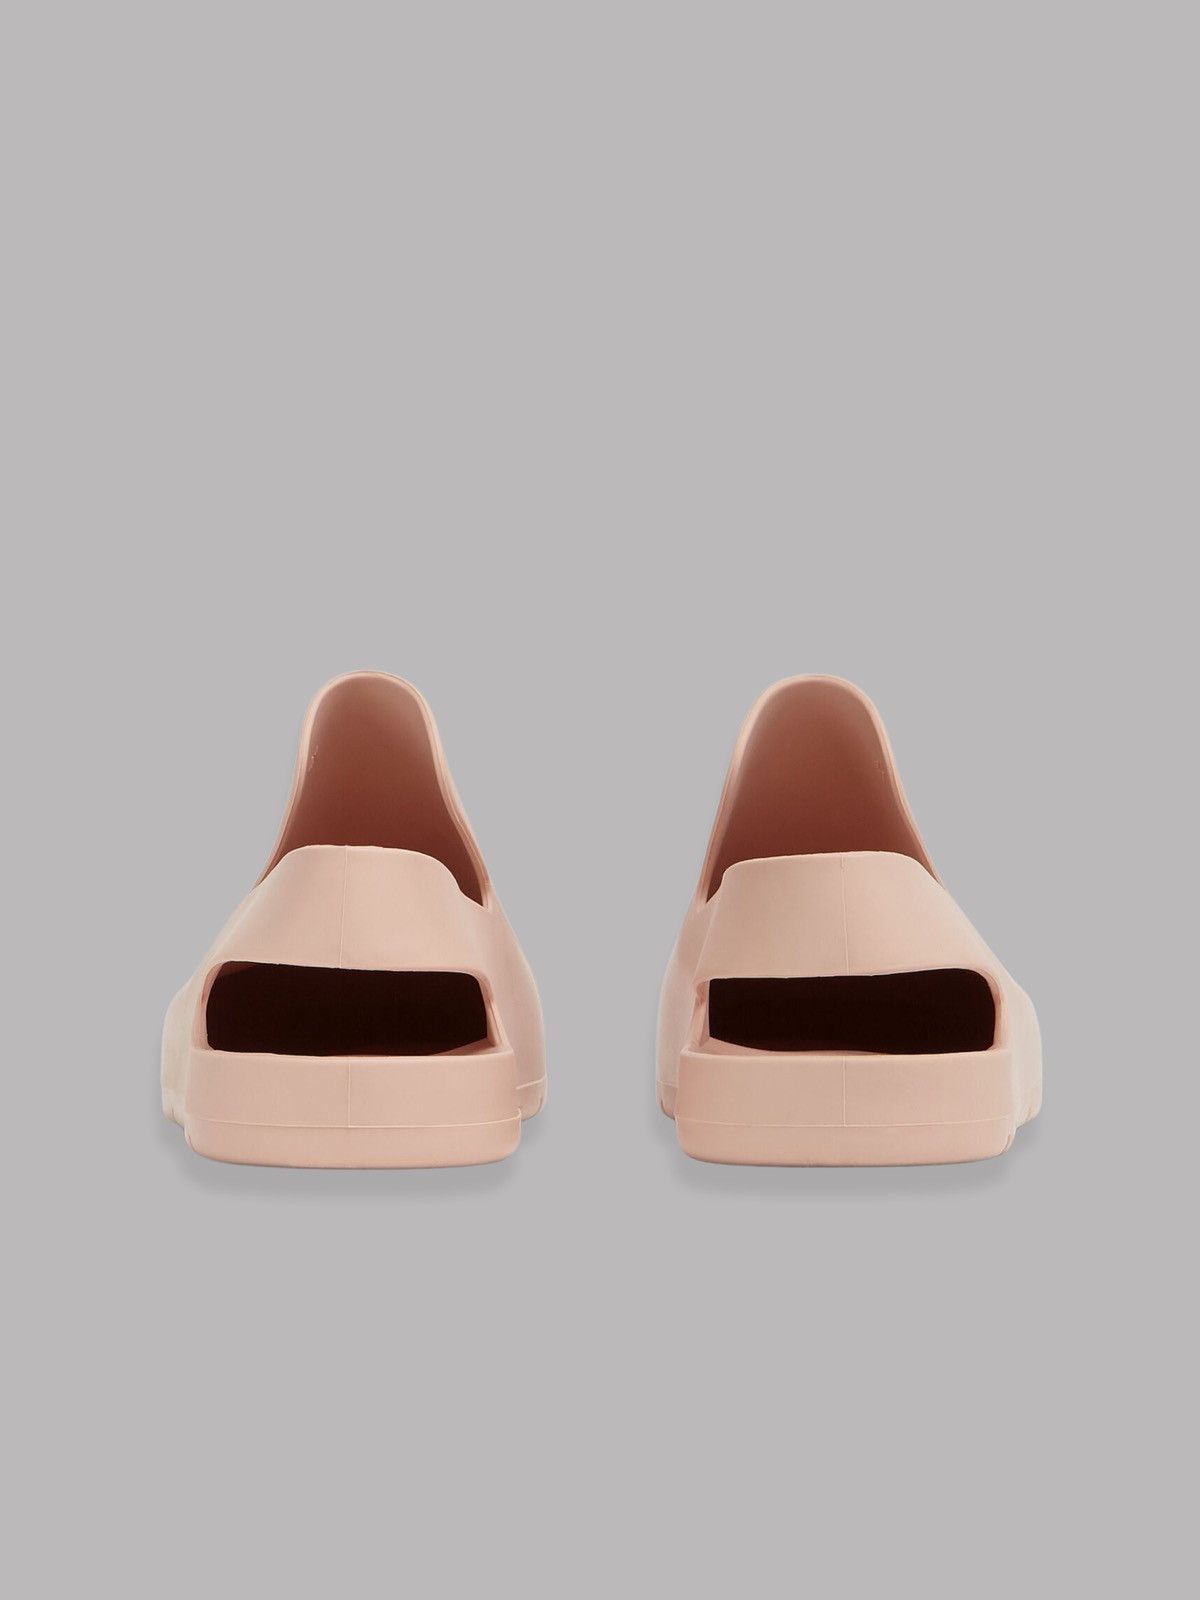 Bottega Veneta Bottega Veneta Rubber Slingback Sandal Mules Size US 7 / EU 40 - 3 Thumbnail